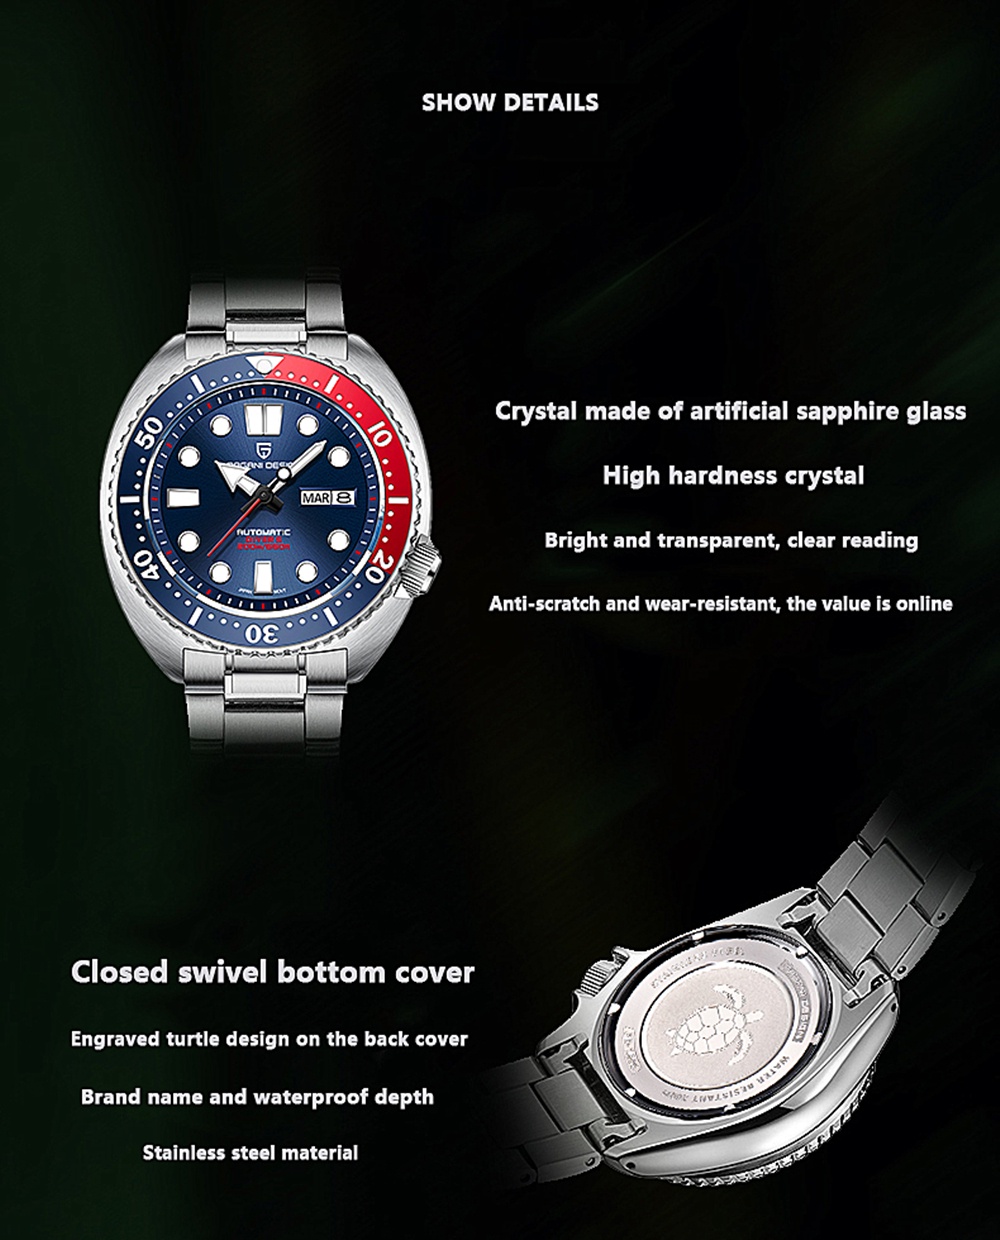 มุมมองเพิ่มเติมของสินค้า Pagani Design Original 45MM ดำน้ำอัตโนมัตินาฬิกา Seiko NH36 สแตนเลส 20Bar กันน้ำนาฬิกาผู้ชาย PD-1696